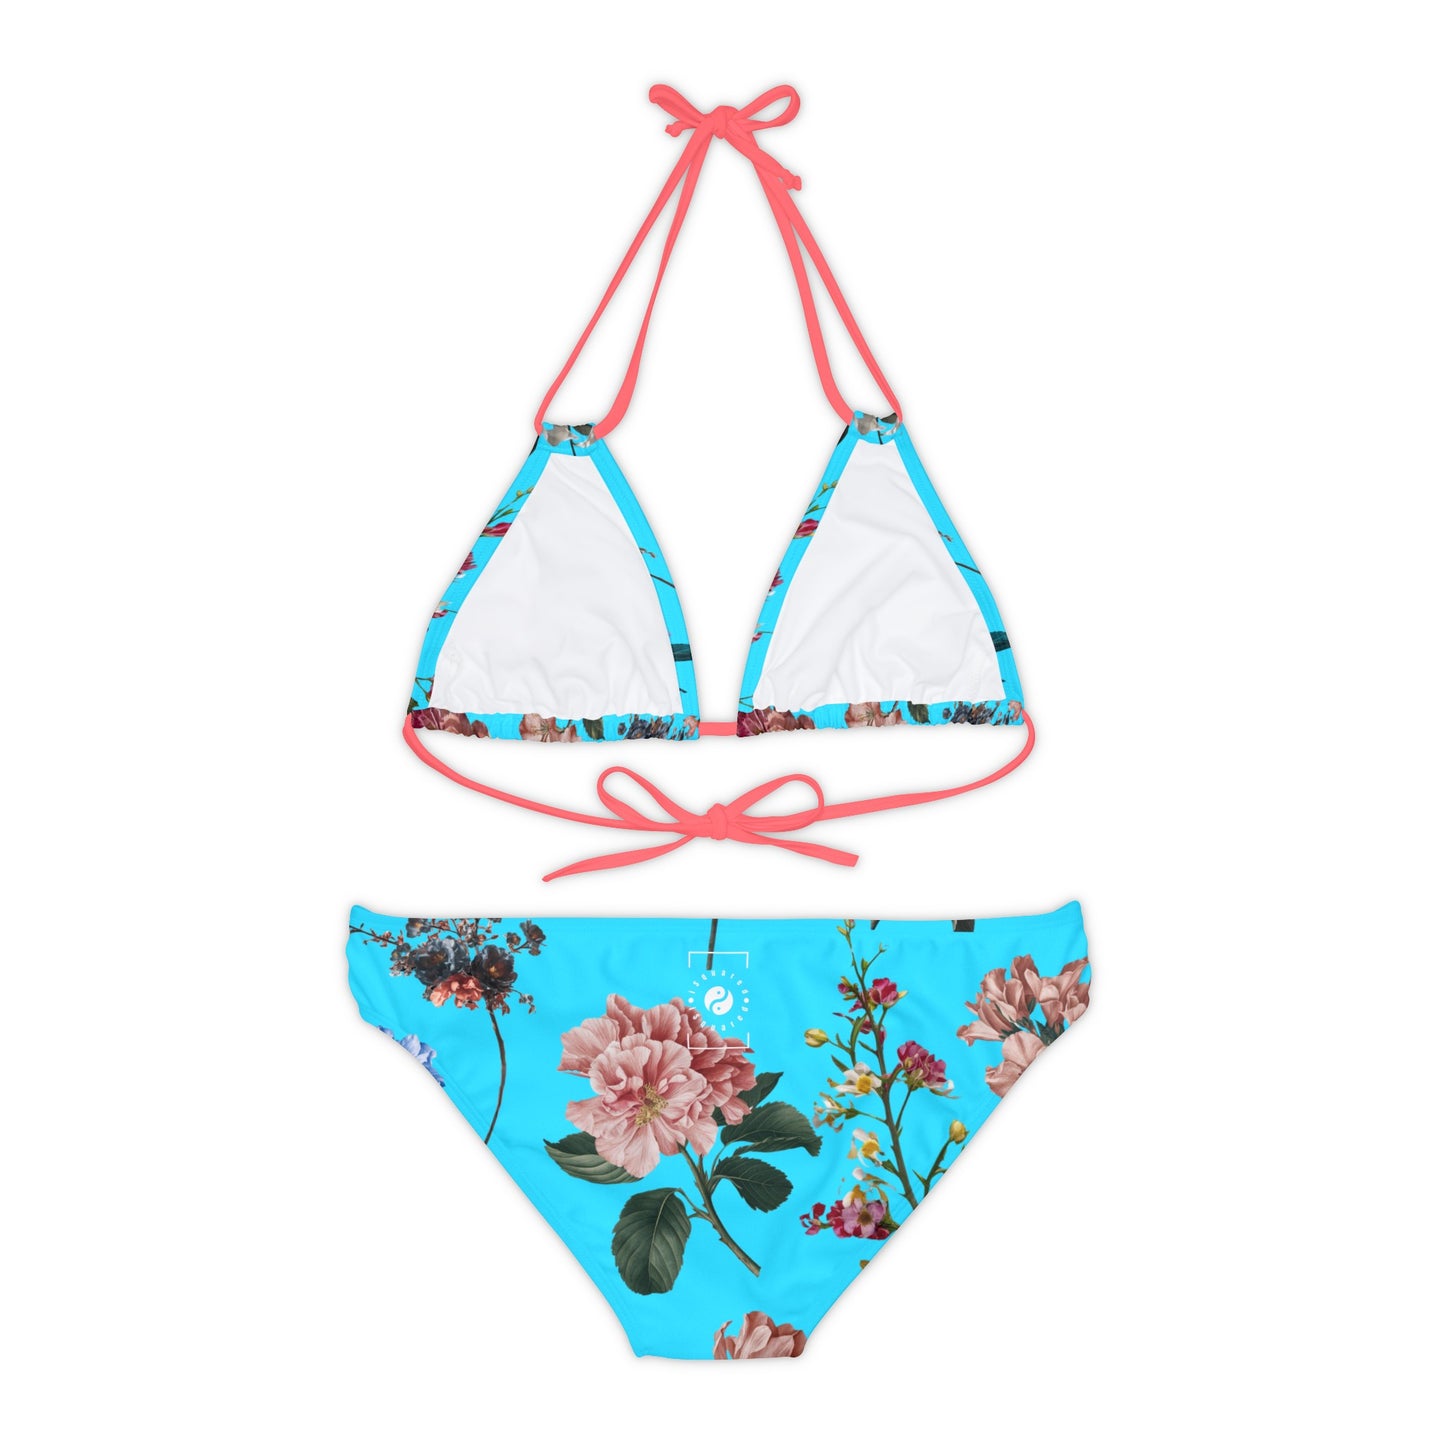 Botanicals on Azure - Lace-up Bikini Set